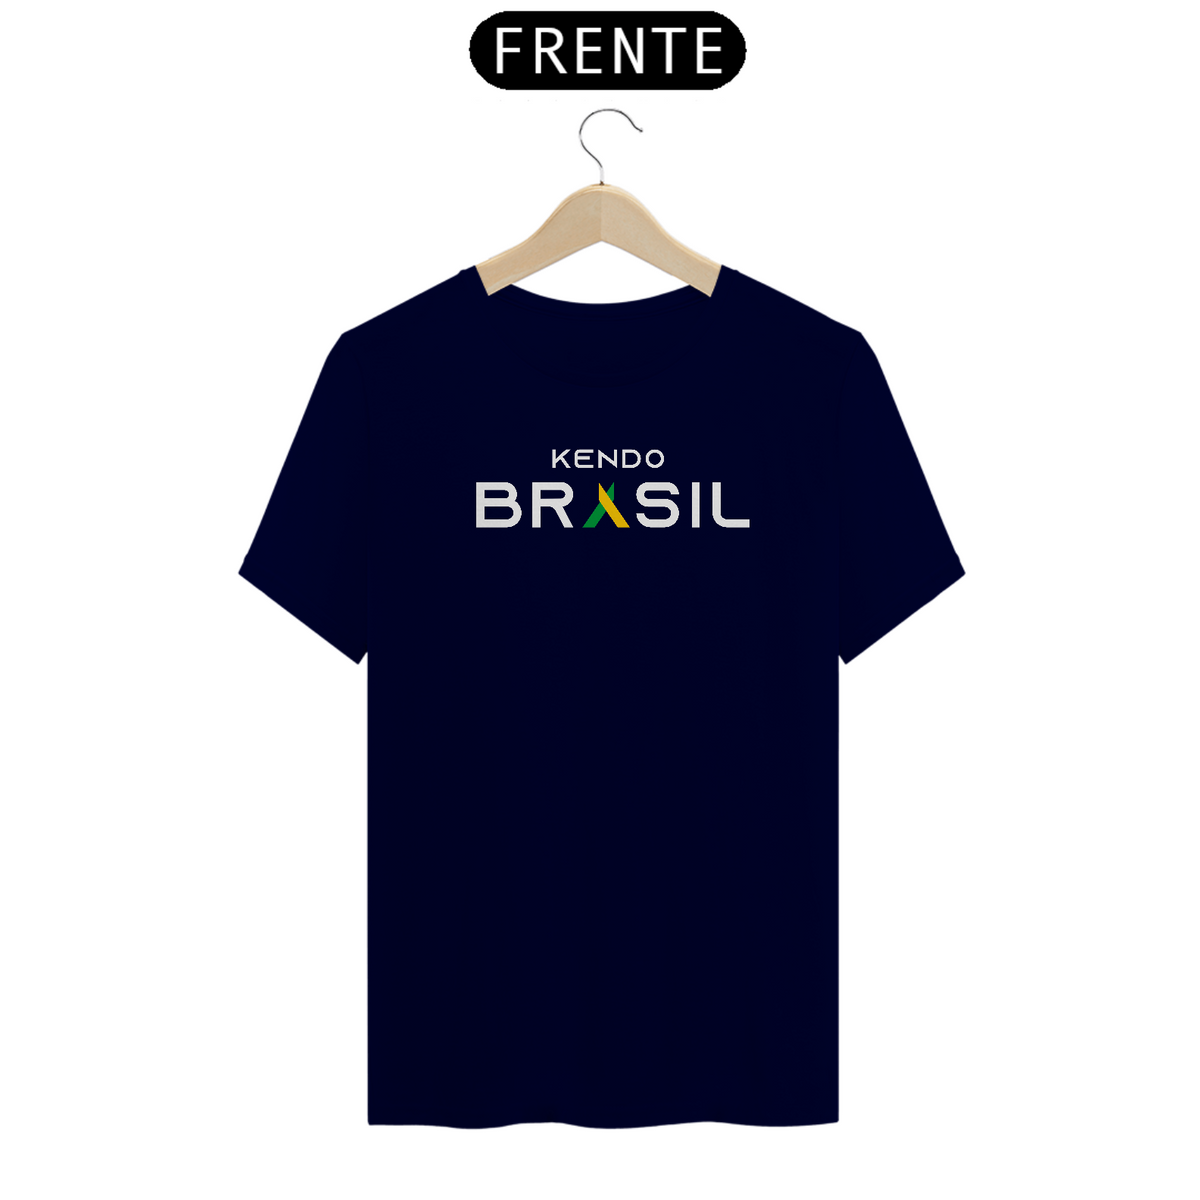 Nome do produto: Kendo Brazil 